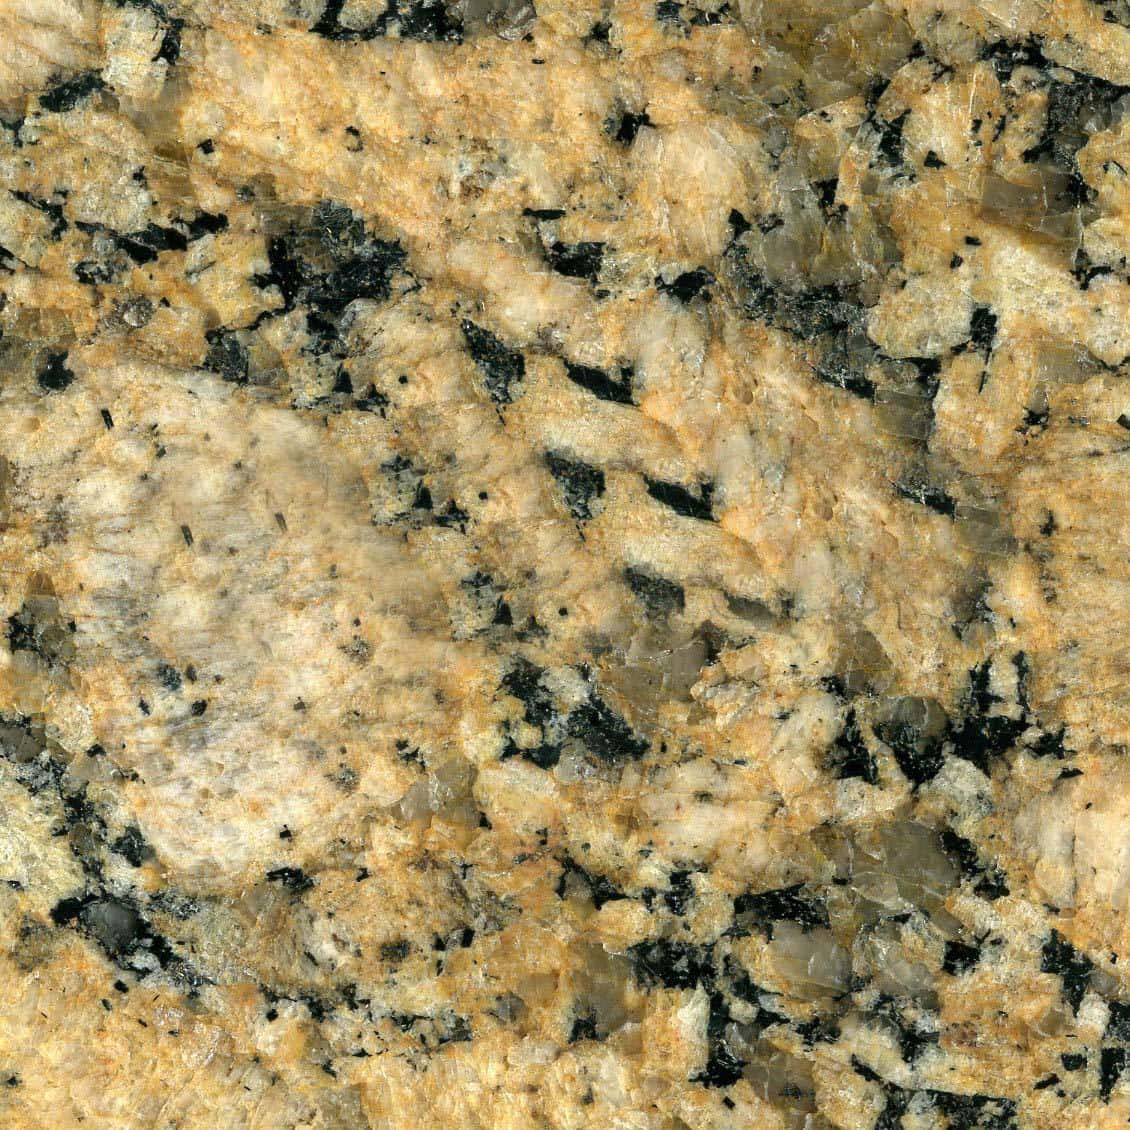 Granite countertop in a contemporary kitchen